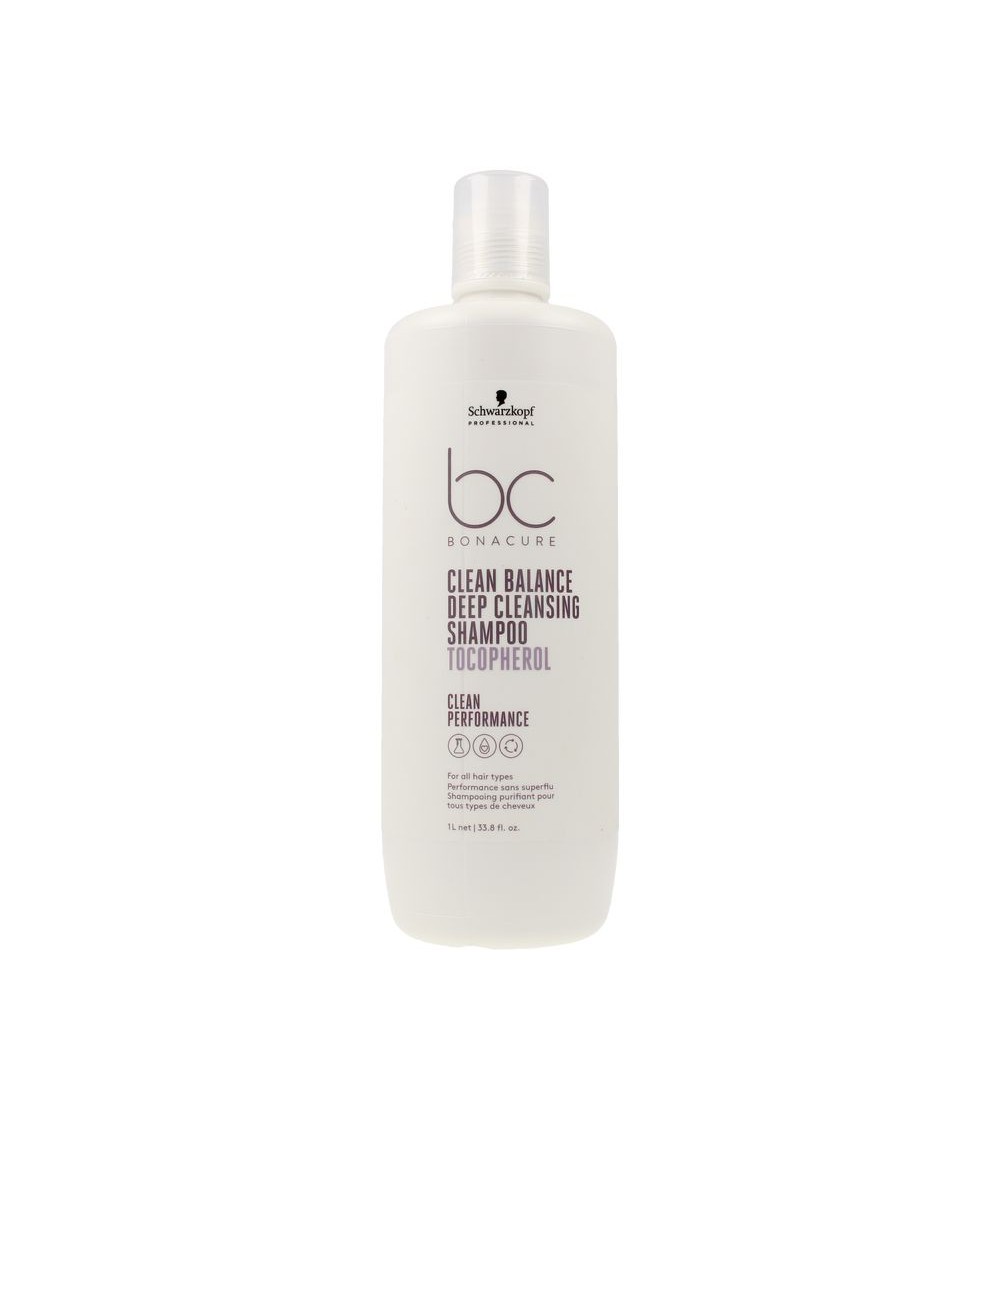 BC CLEAN BALANCE deep cleansing shampoo